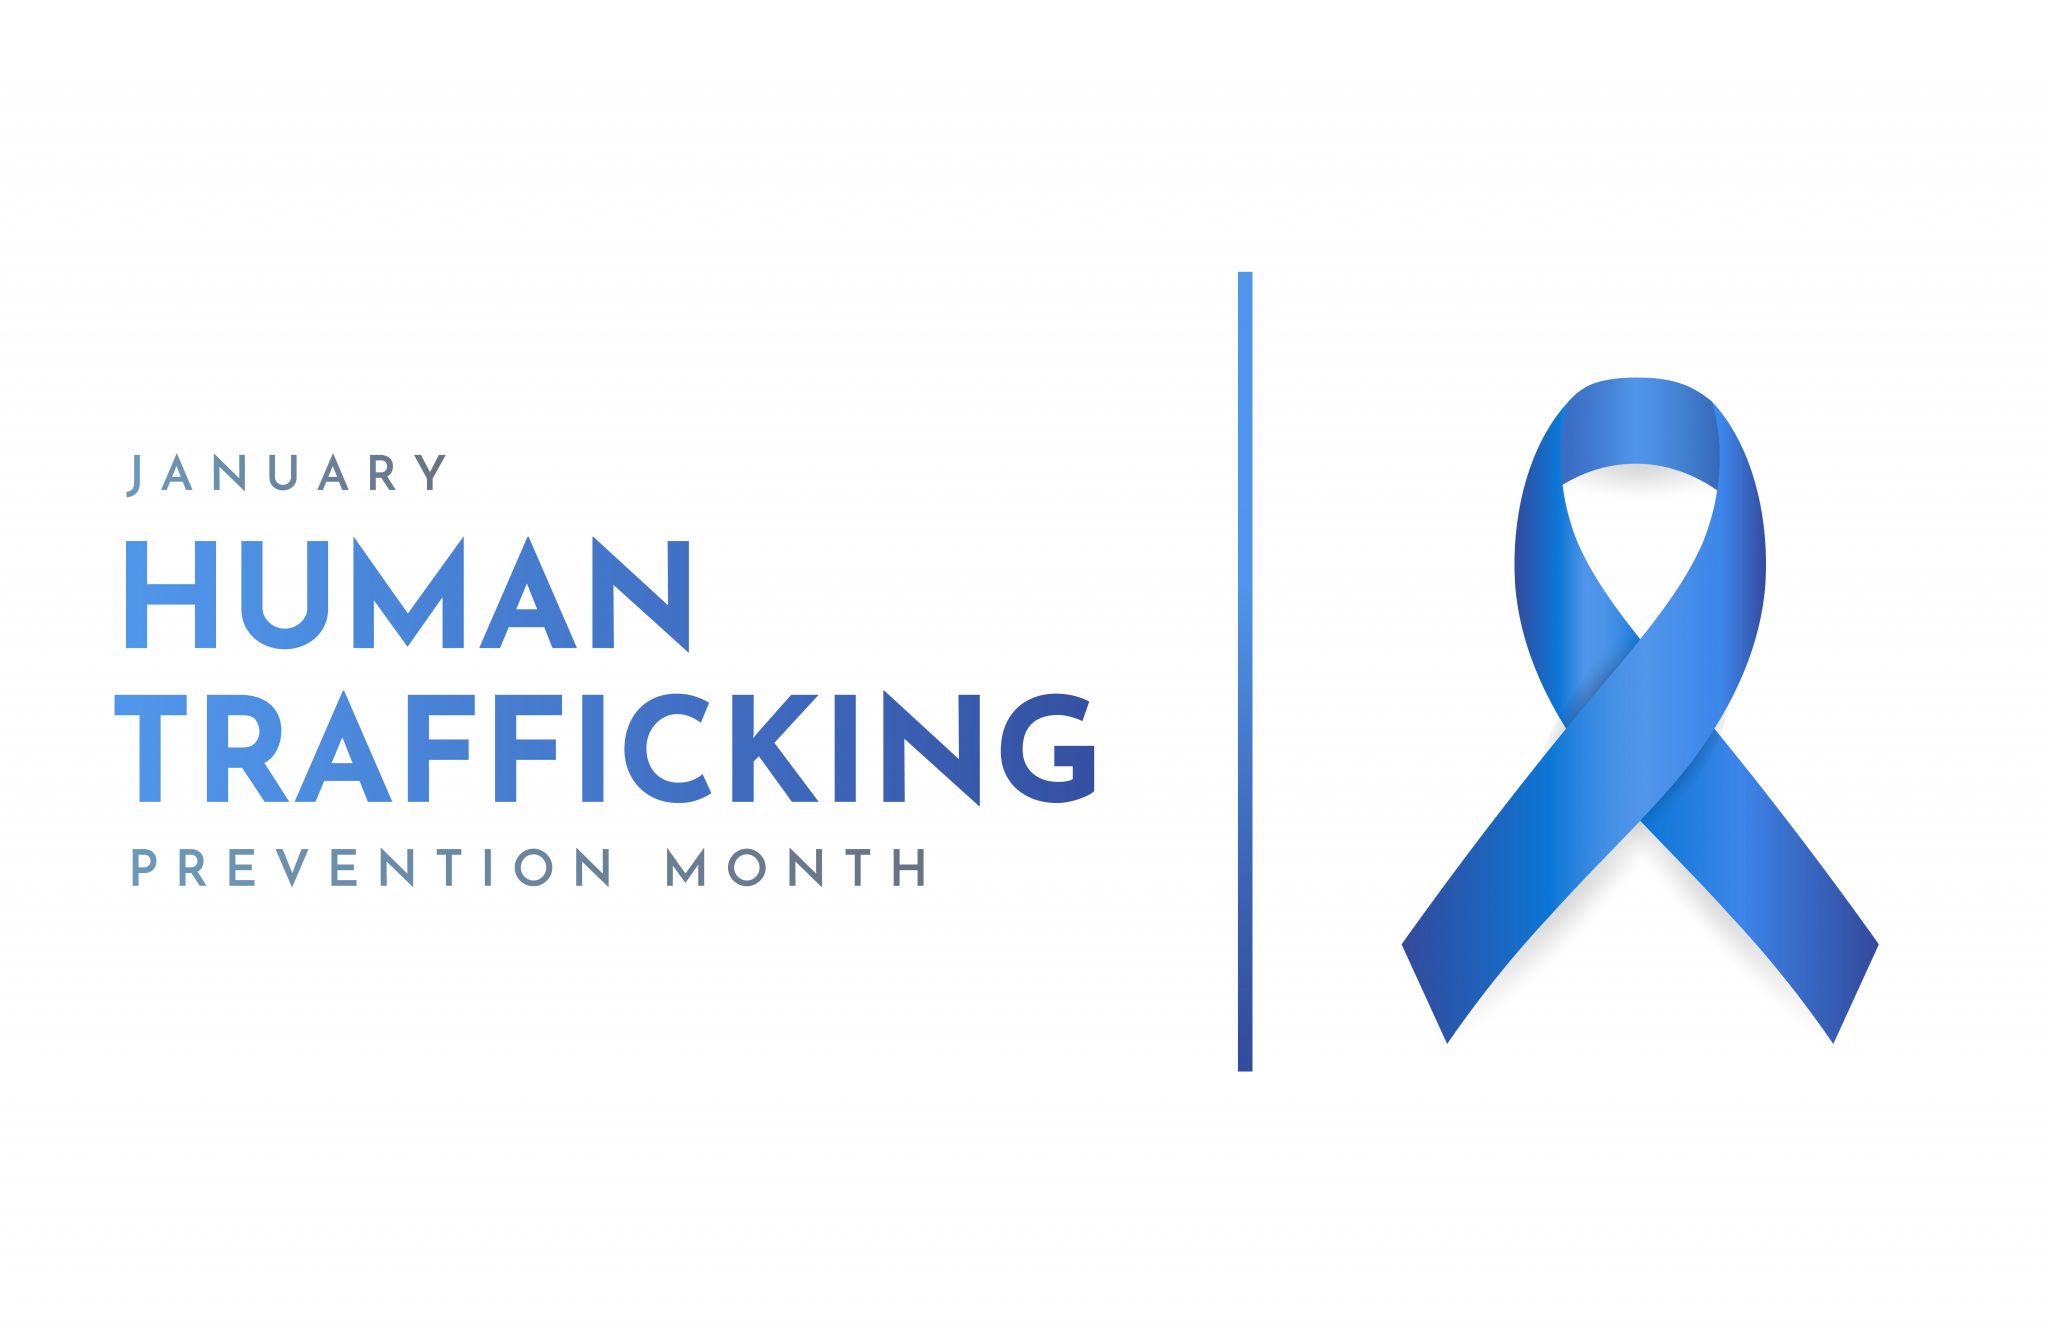 Human Trafficking Awareness Day is Jan. 11